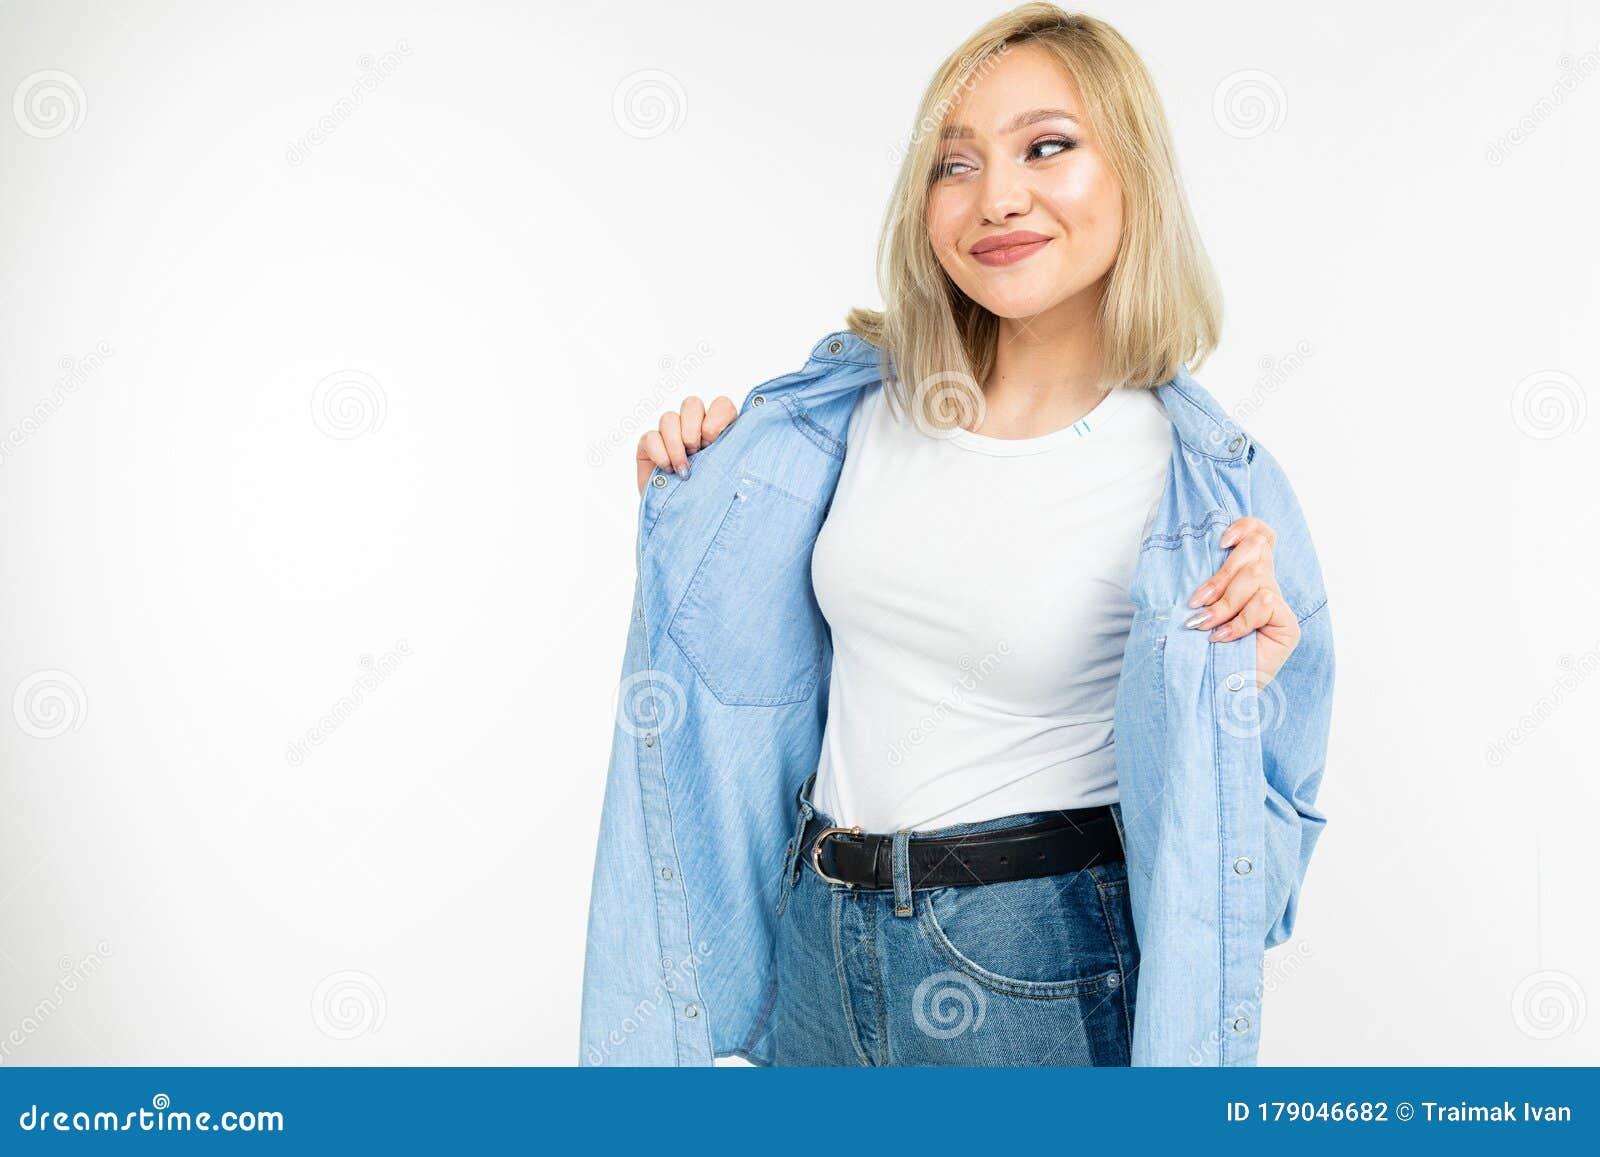 Loca Linda Muchacha Con El Pelo Rubio En Ropa Elegante De Jeans Posando En Un Fondo Blanco Con Espacio Para Copiar Foto archivo - Imagen de atractivo, muchacha: 179046682